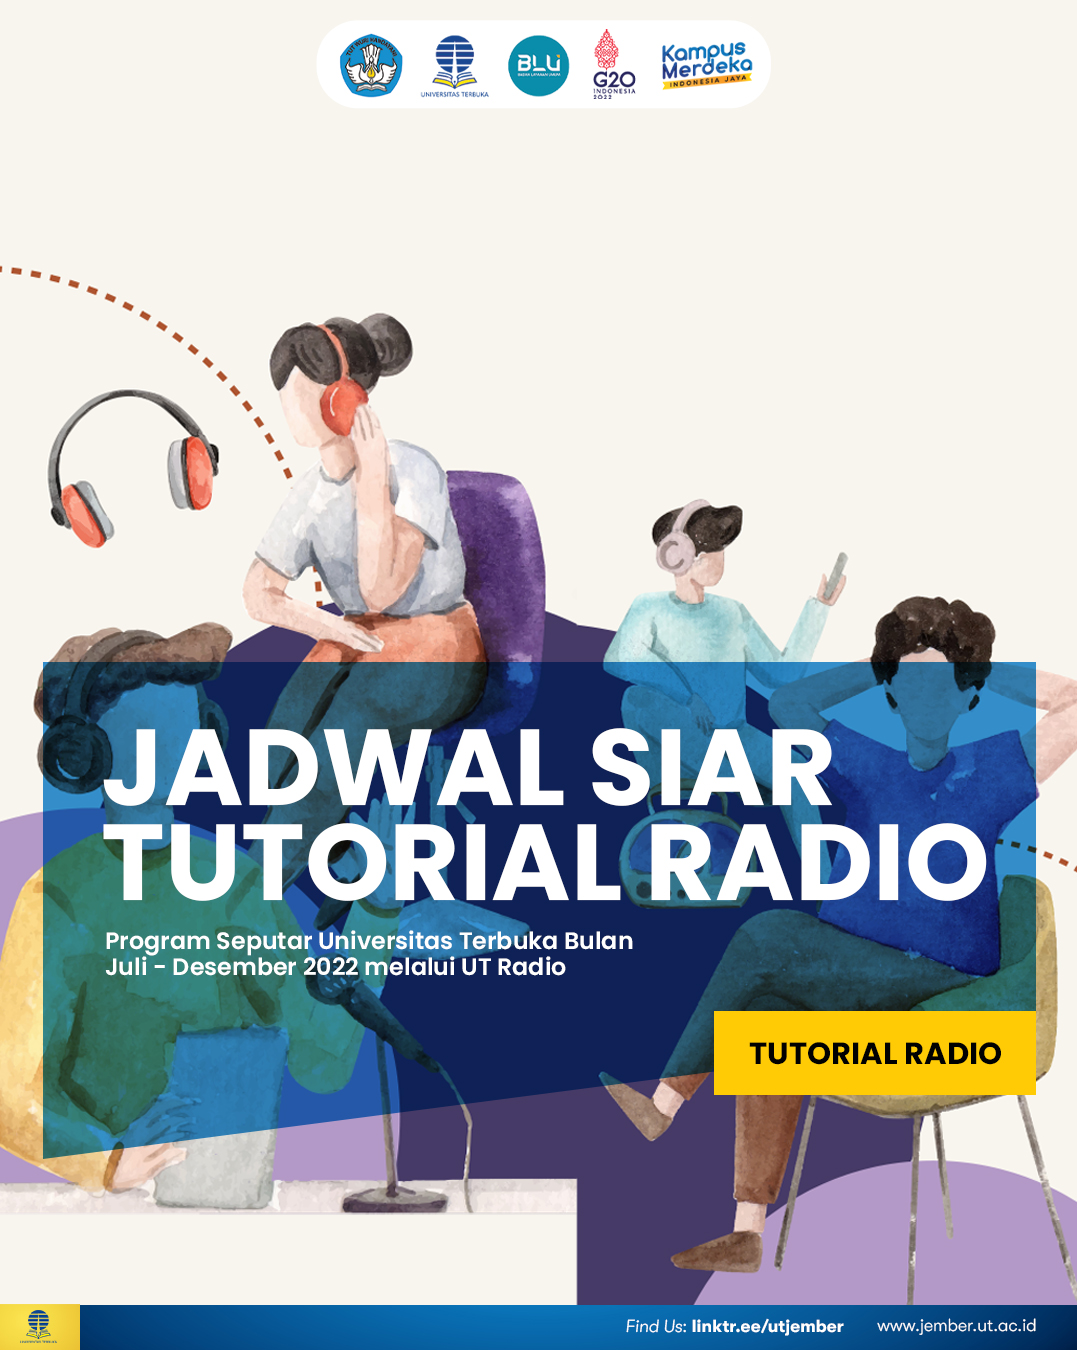 JADWAL TUTORIAL RADIO 01